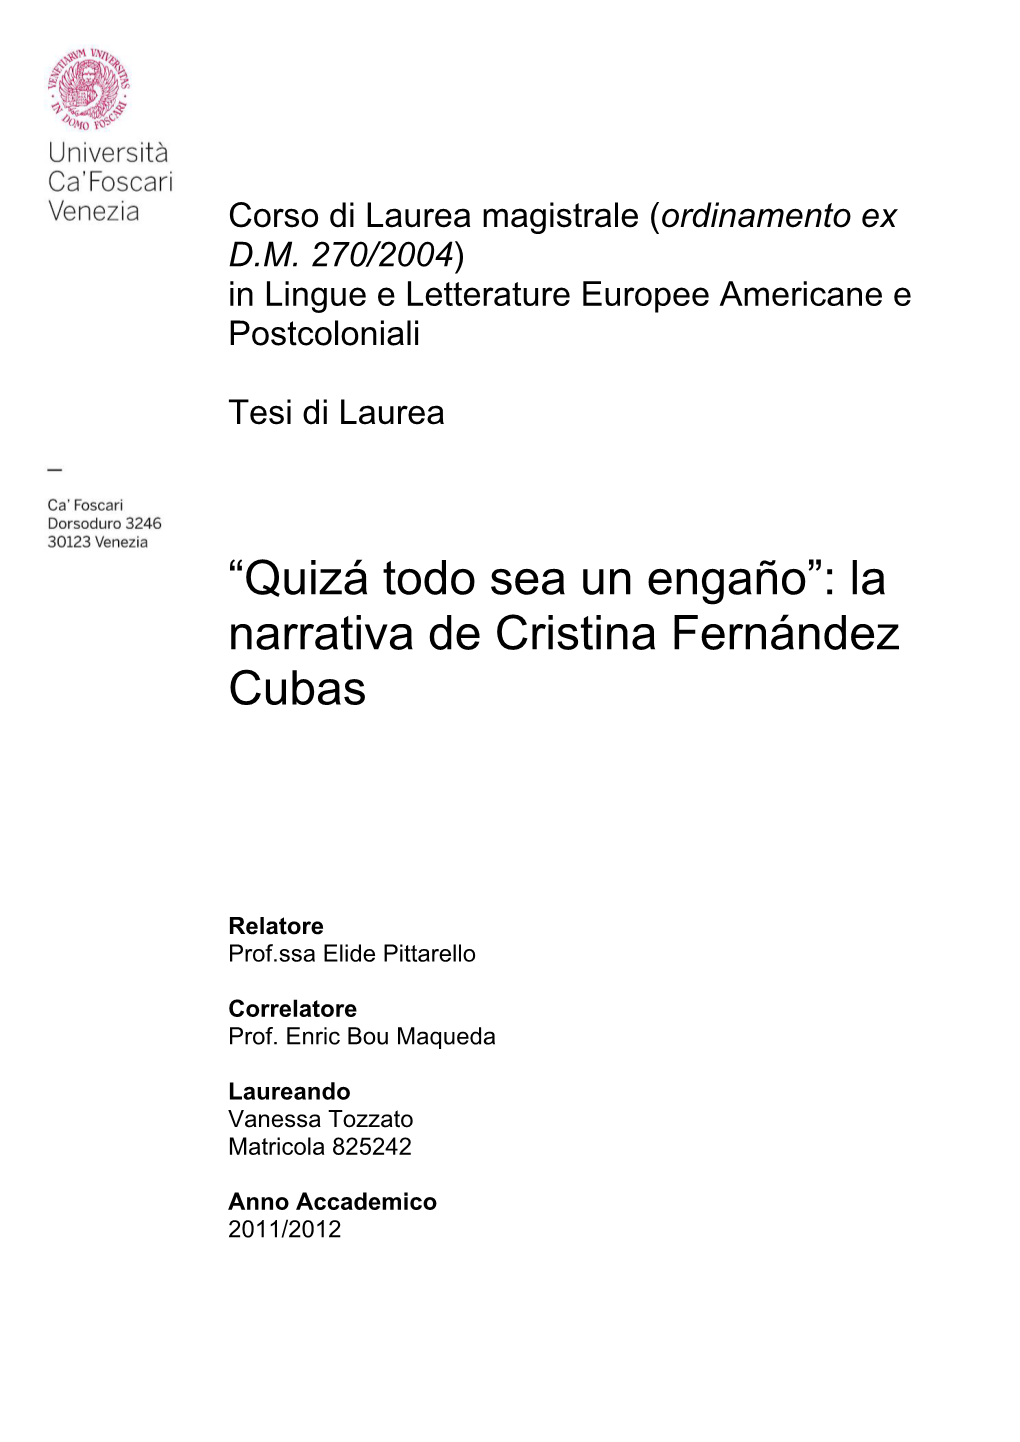 La Narrativa De Cristina Fernández Cubas